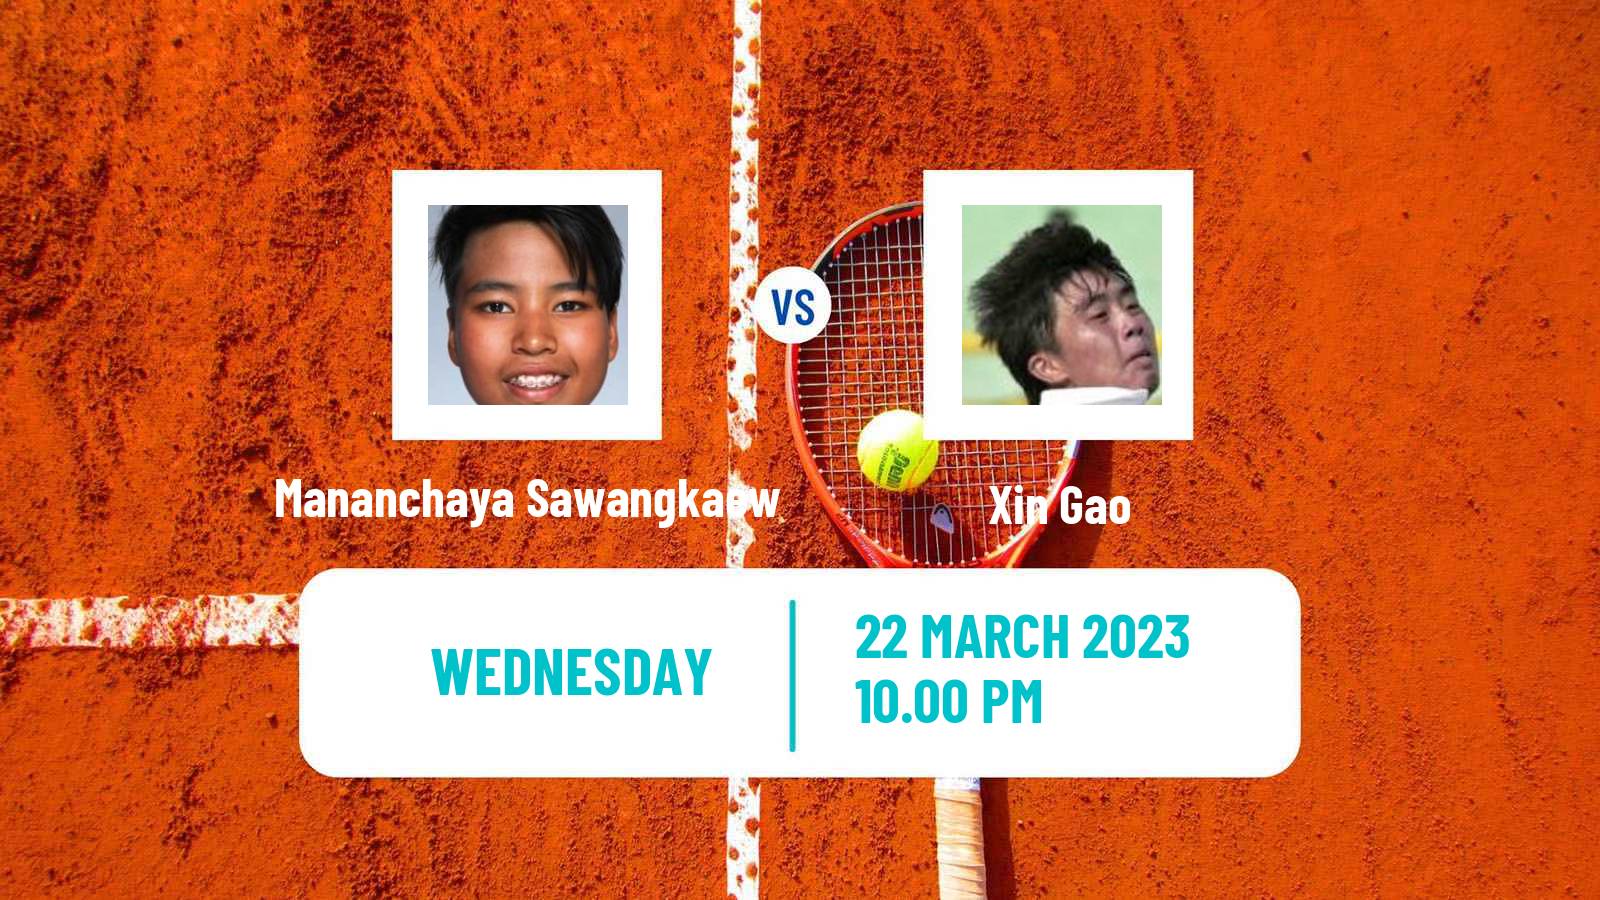 Tennis ITF Tournaments Mananchaya Sawangkaew - Xin Gao